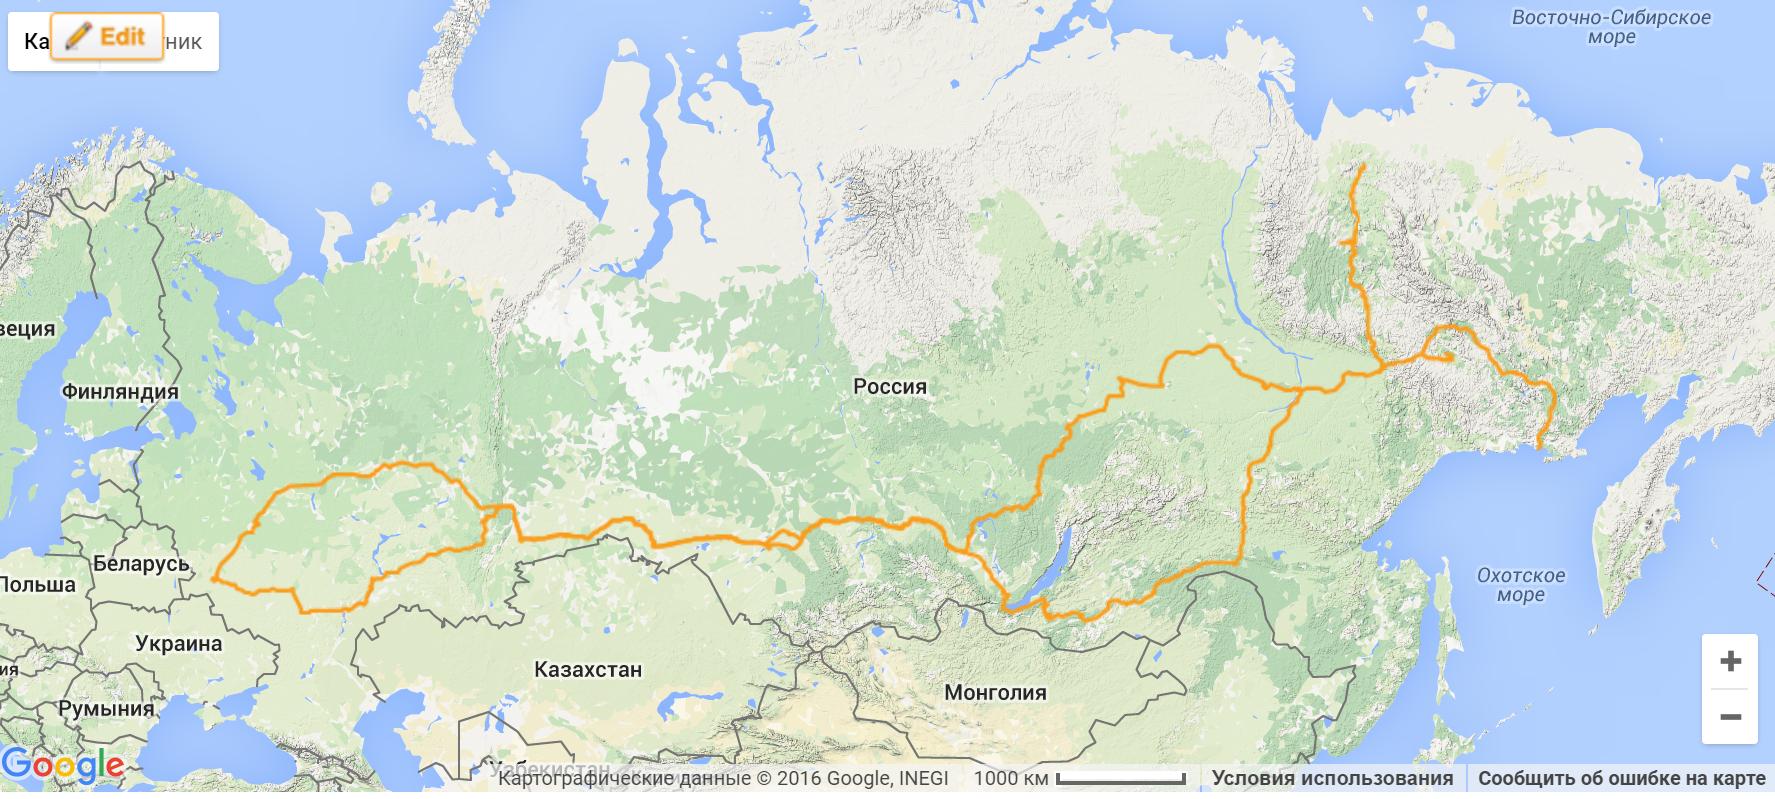 Найти озеро байкал на карте. Озеро Байкал на карте России. Оз Байкал на карте России. Расположение озера Байкал на карте России.